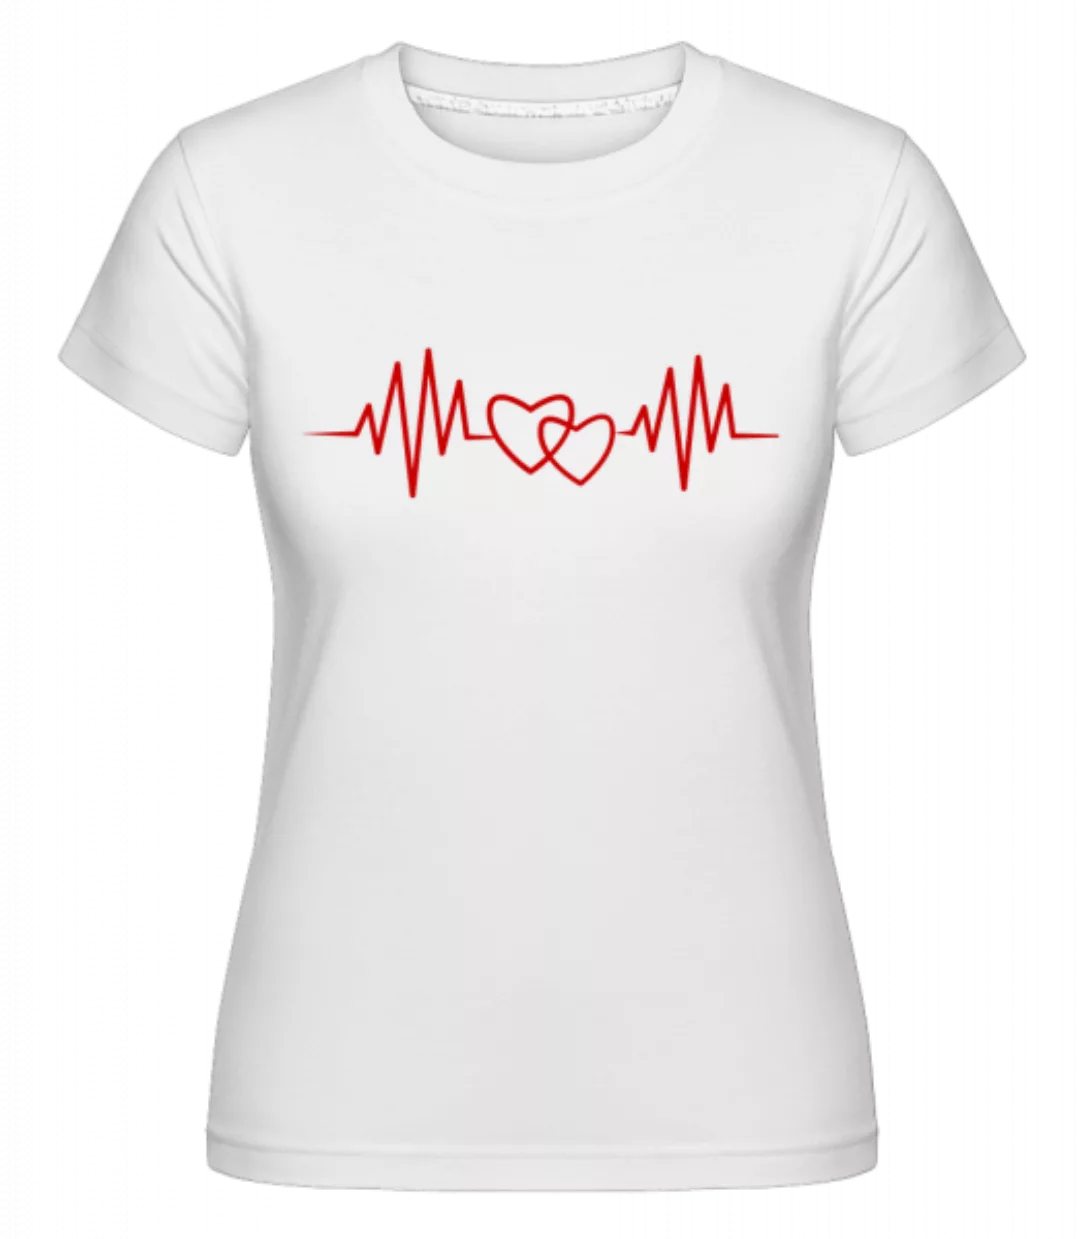 Herzschlag · Shirtinator Frauen T-Shirt günstig online kaufen